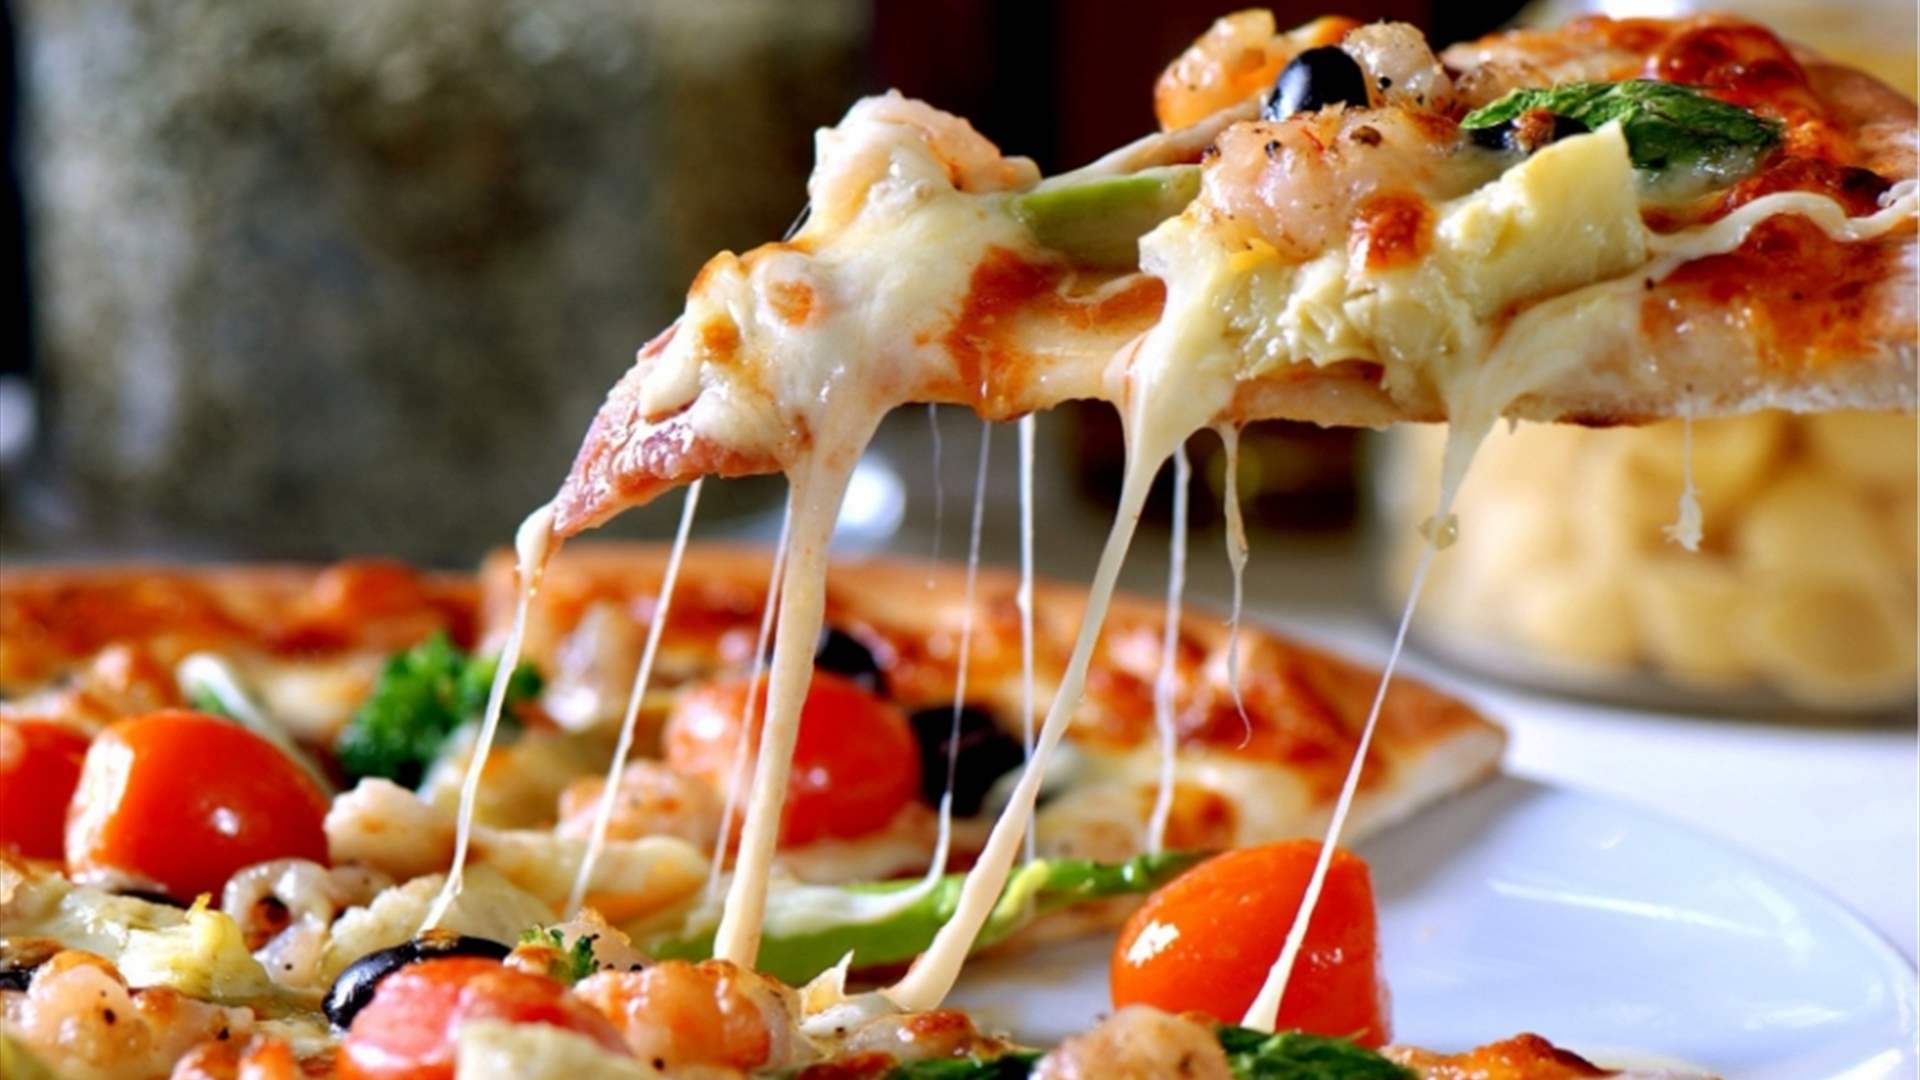 تصريح صادم من مؤرخ طعام يثير غضب الايطاليين... البيتزا ليست ايطالية وانطلقت من هذه الدولة؟!